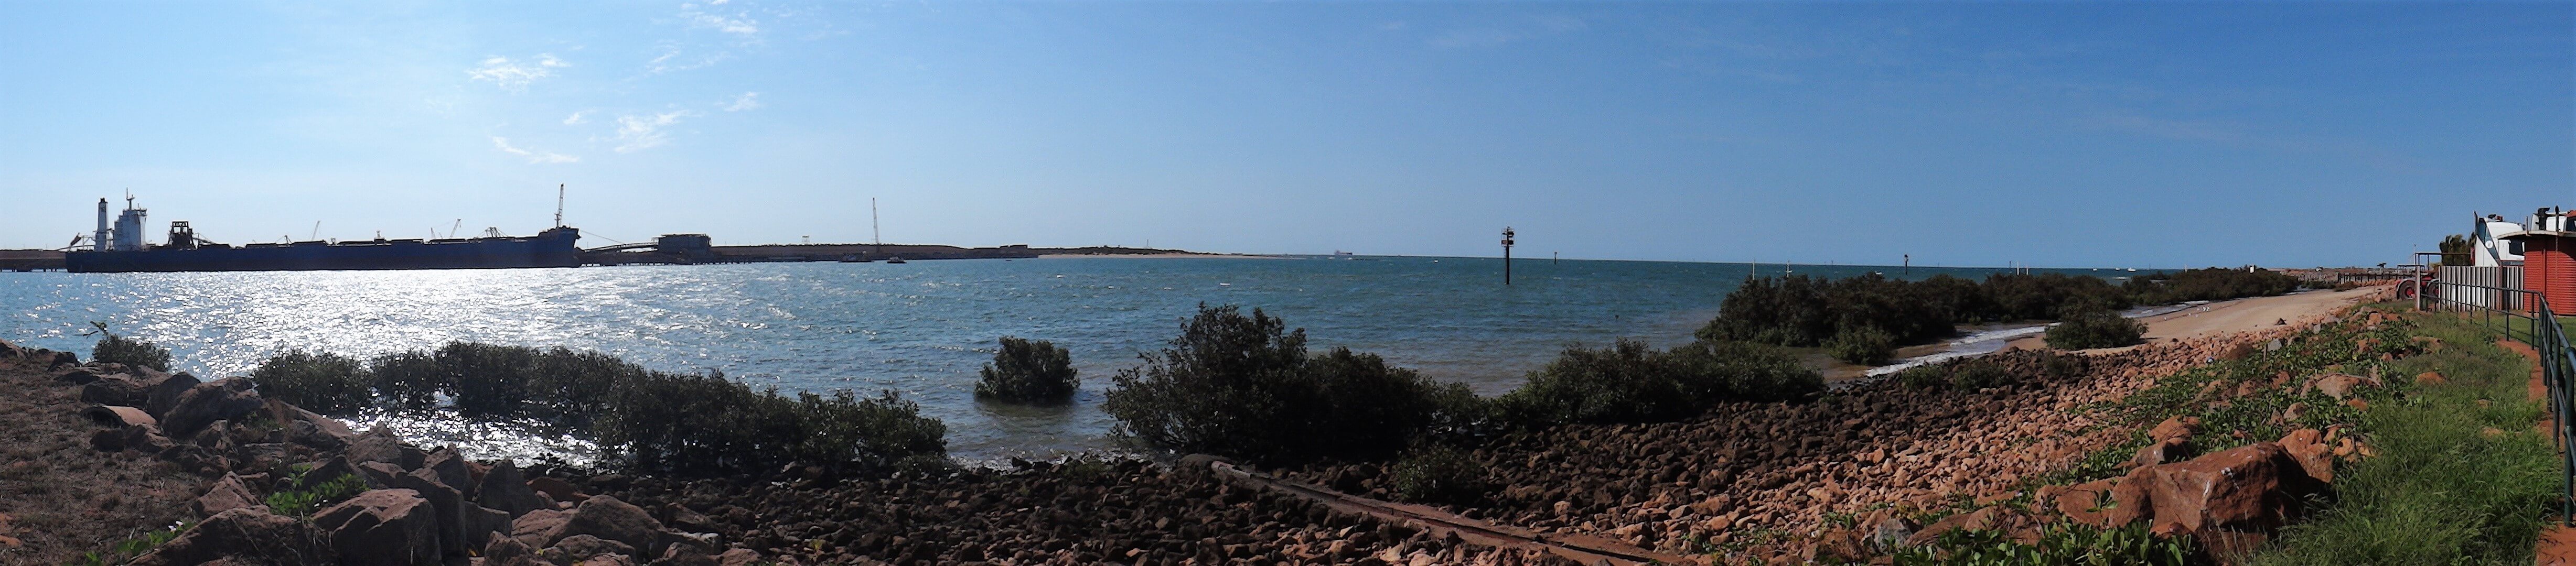 Port Hedland